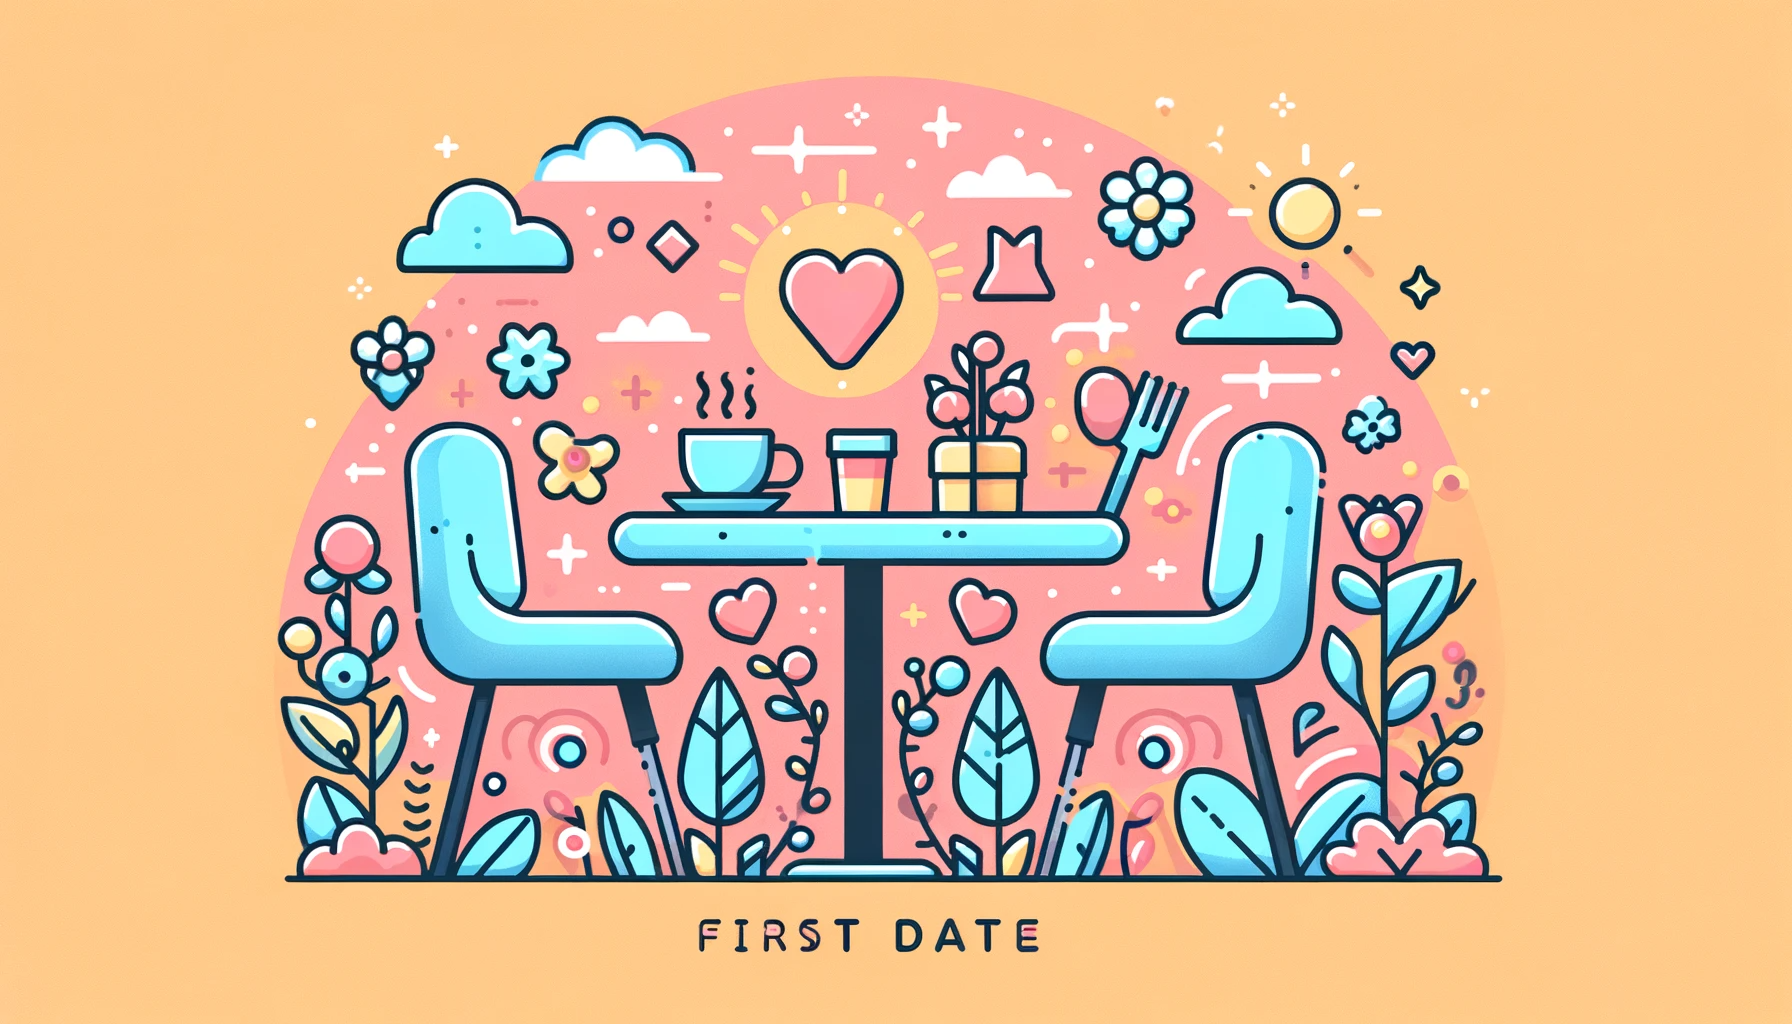 Oto miniaturka do artykułu "Porady na Pierwsze Randki: Jak Zrobić Dobre Wrażenie i Unikać Stresu". Design jest lekki i zapraszający, co idealnie pasuje do tematyki pierwszej randki.